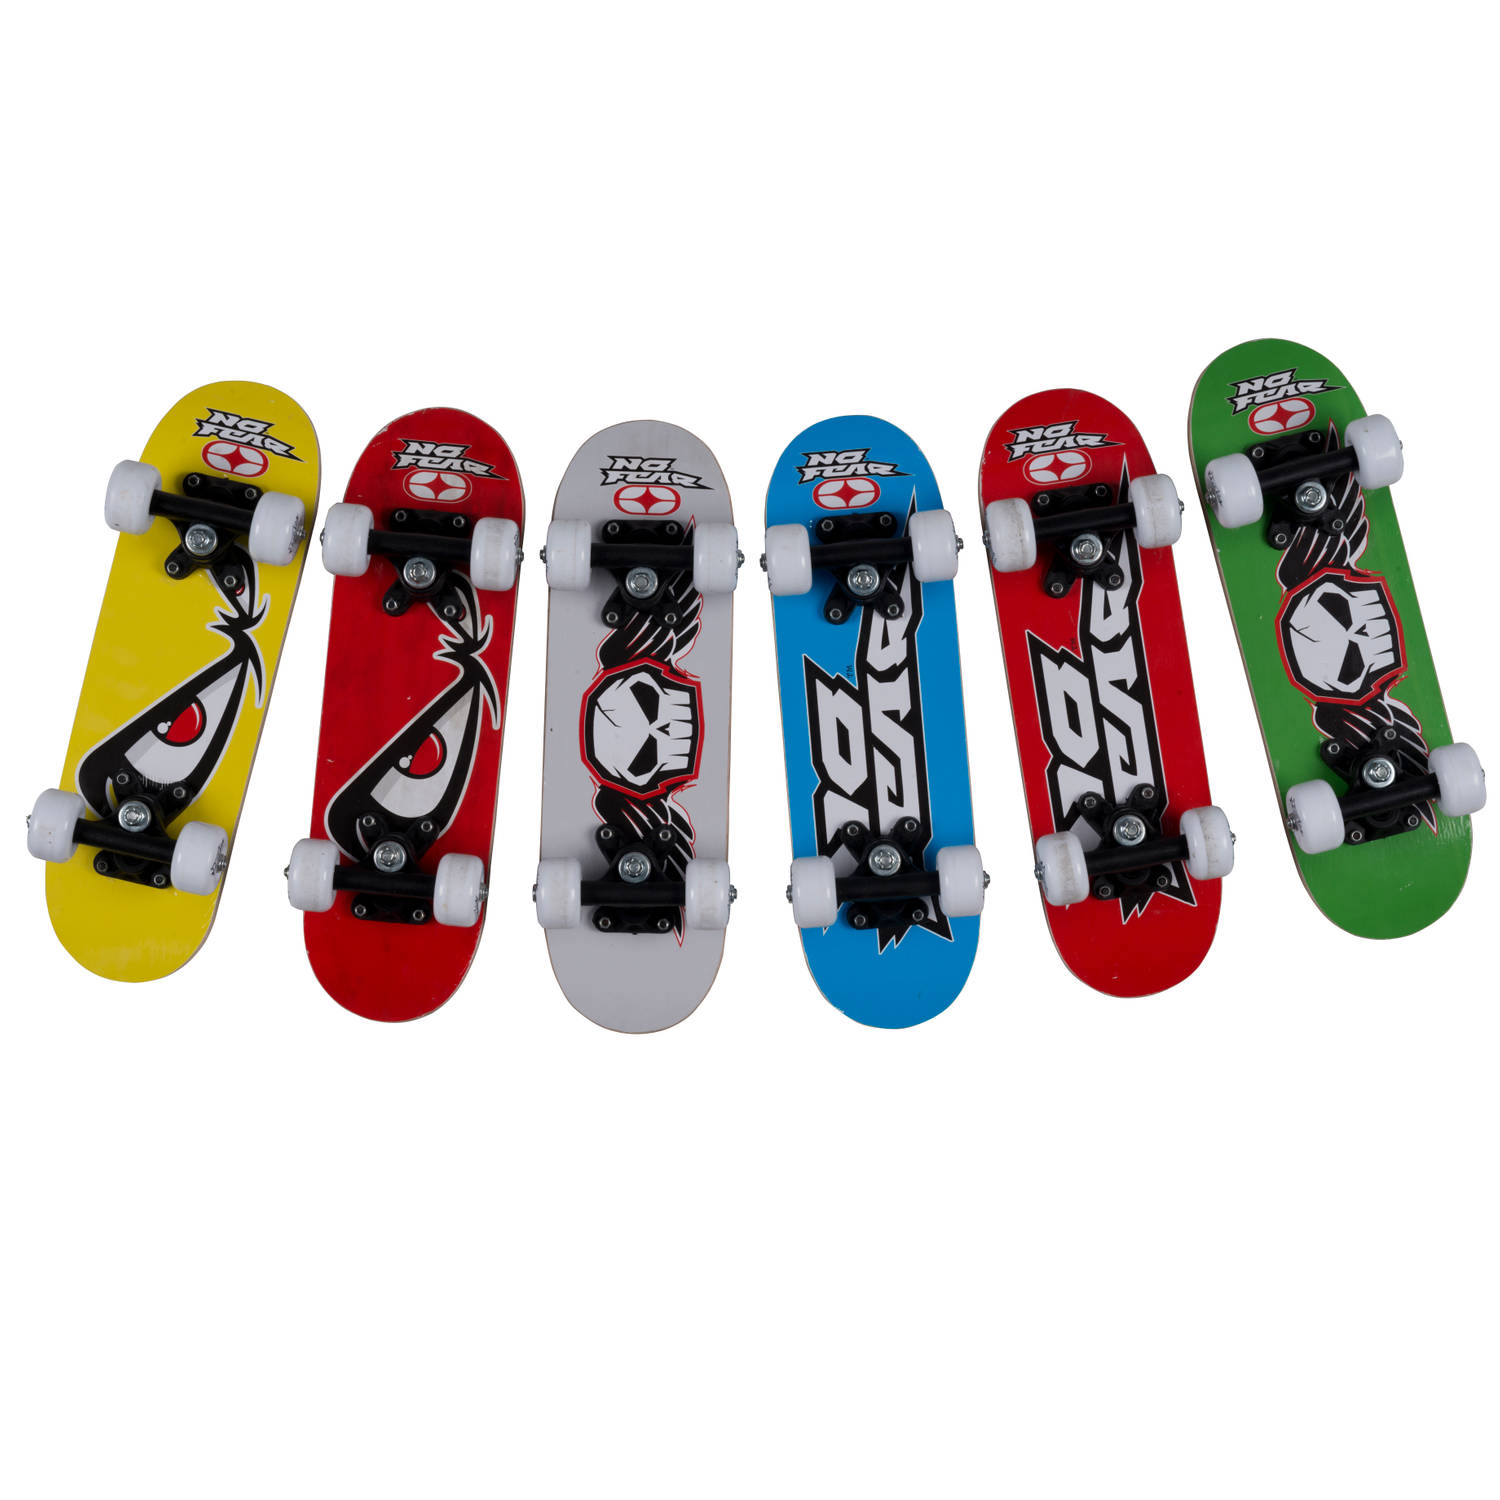 Bezit Glimmend In werkelijkheid No Fear Skateboard - 43,2 x 12,7 cm - Junior - Hout - 6 Varianten | Blokker